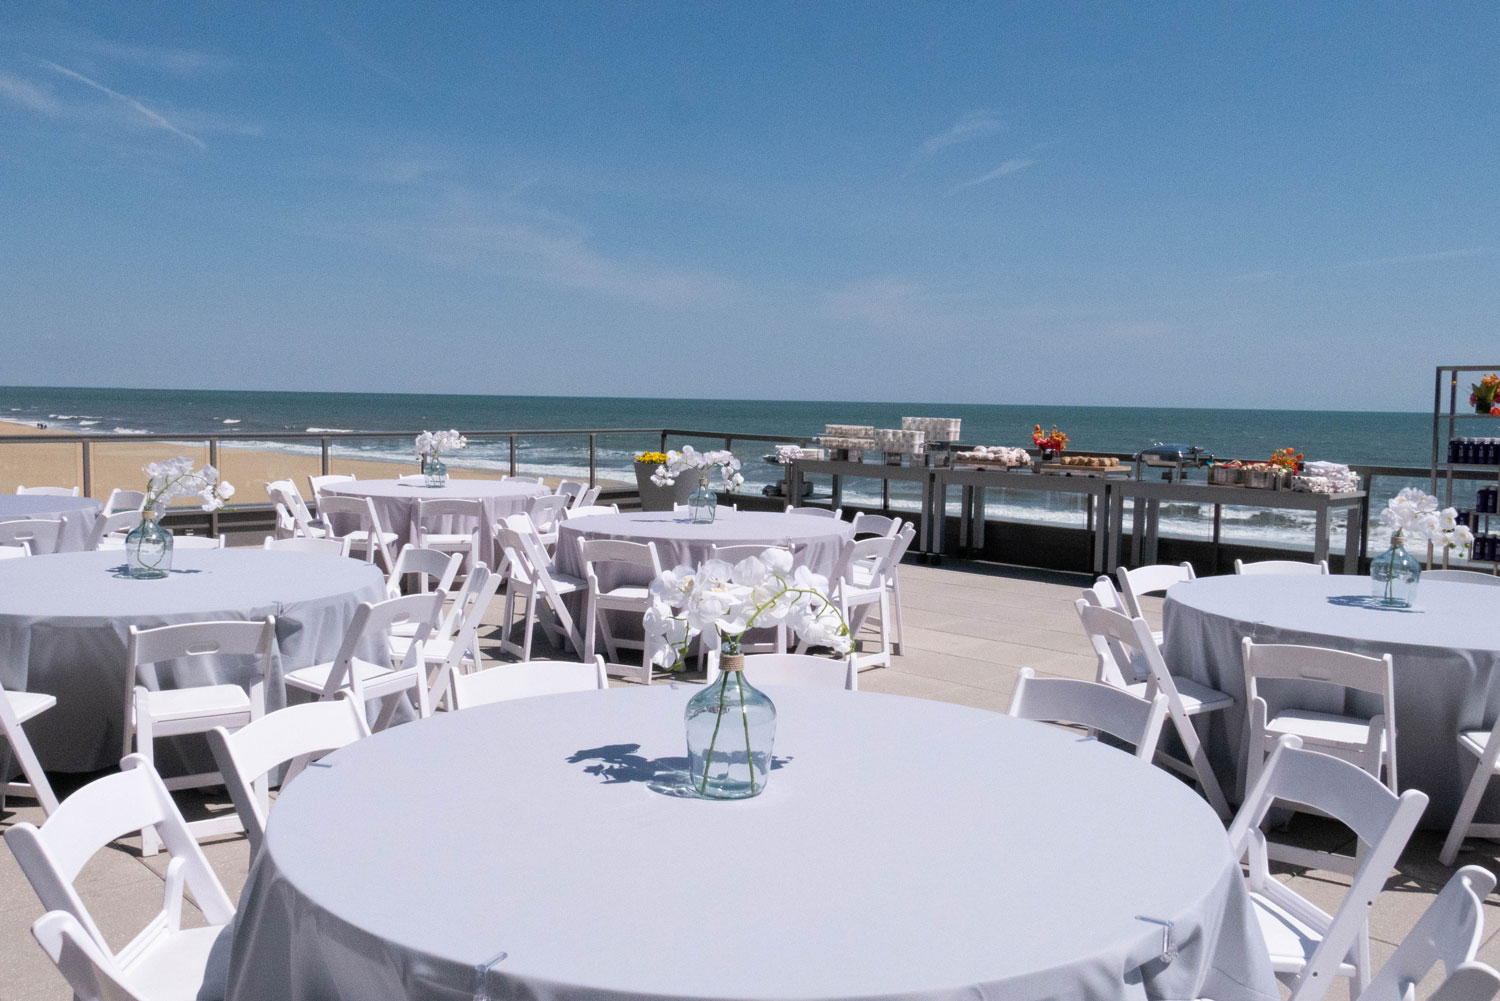 Marriott Seaside Terrace being used as an outdoor meeting venue